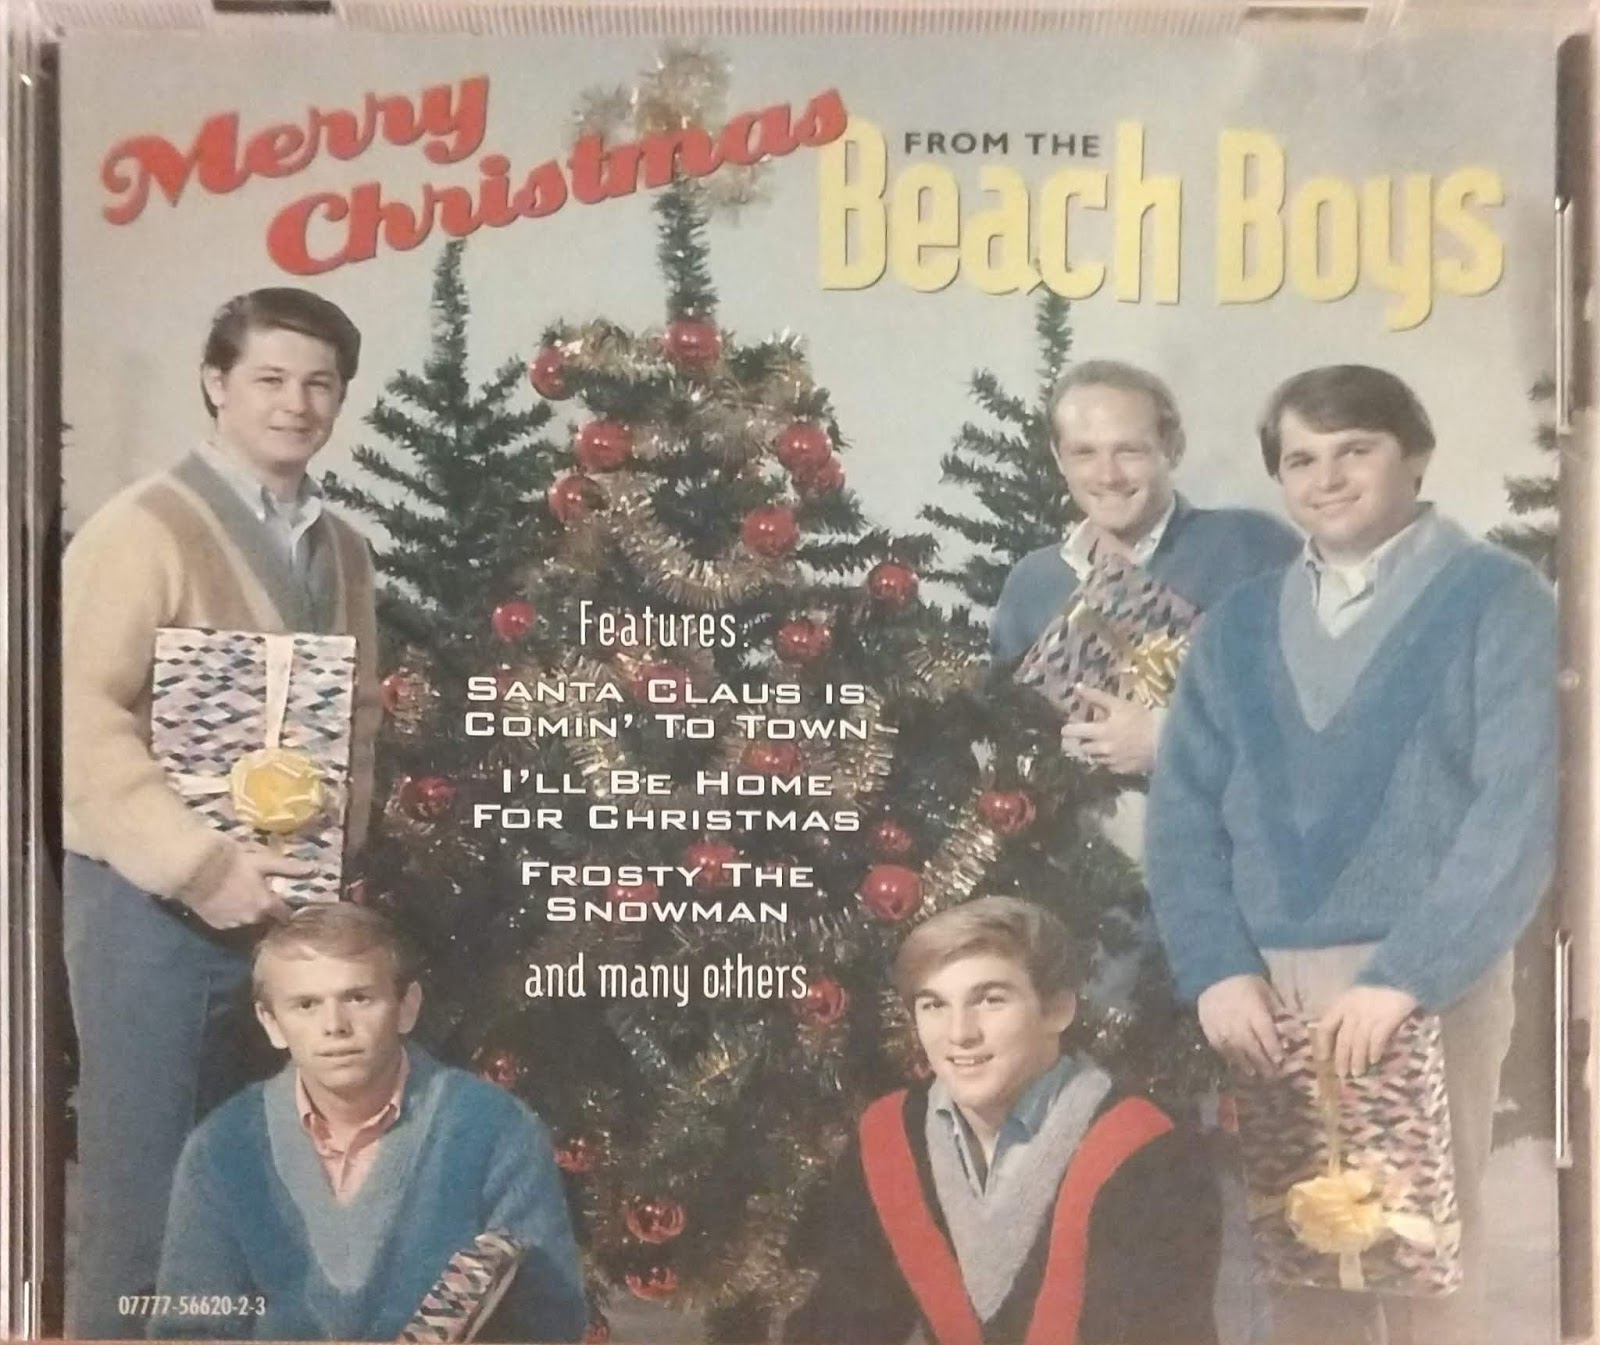 The Beach Boys - The Beach Boys' Christmas Album (1964) - AoM: Music